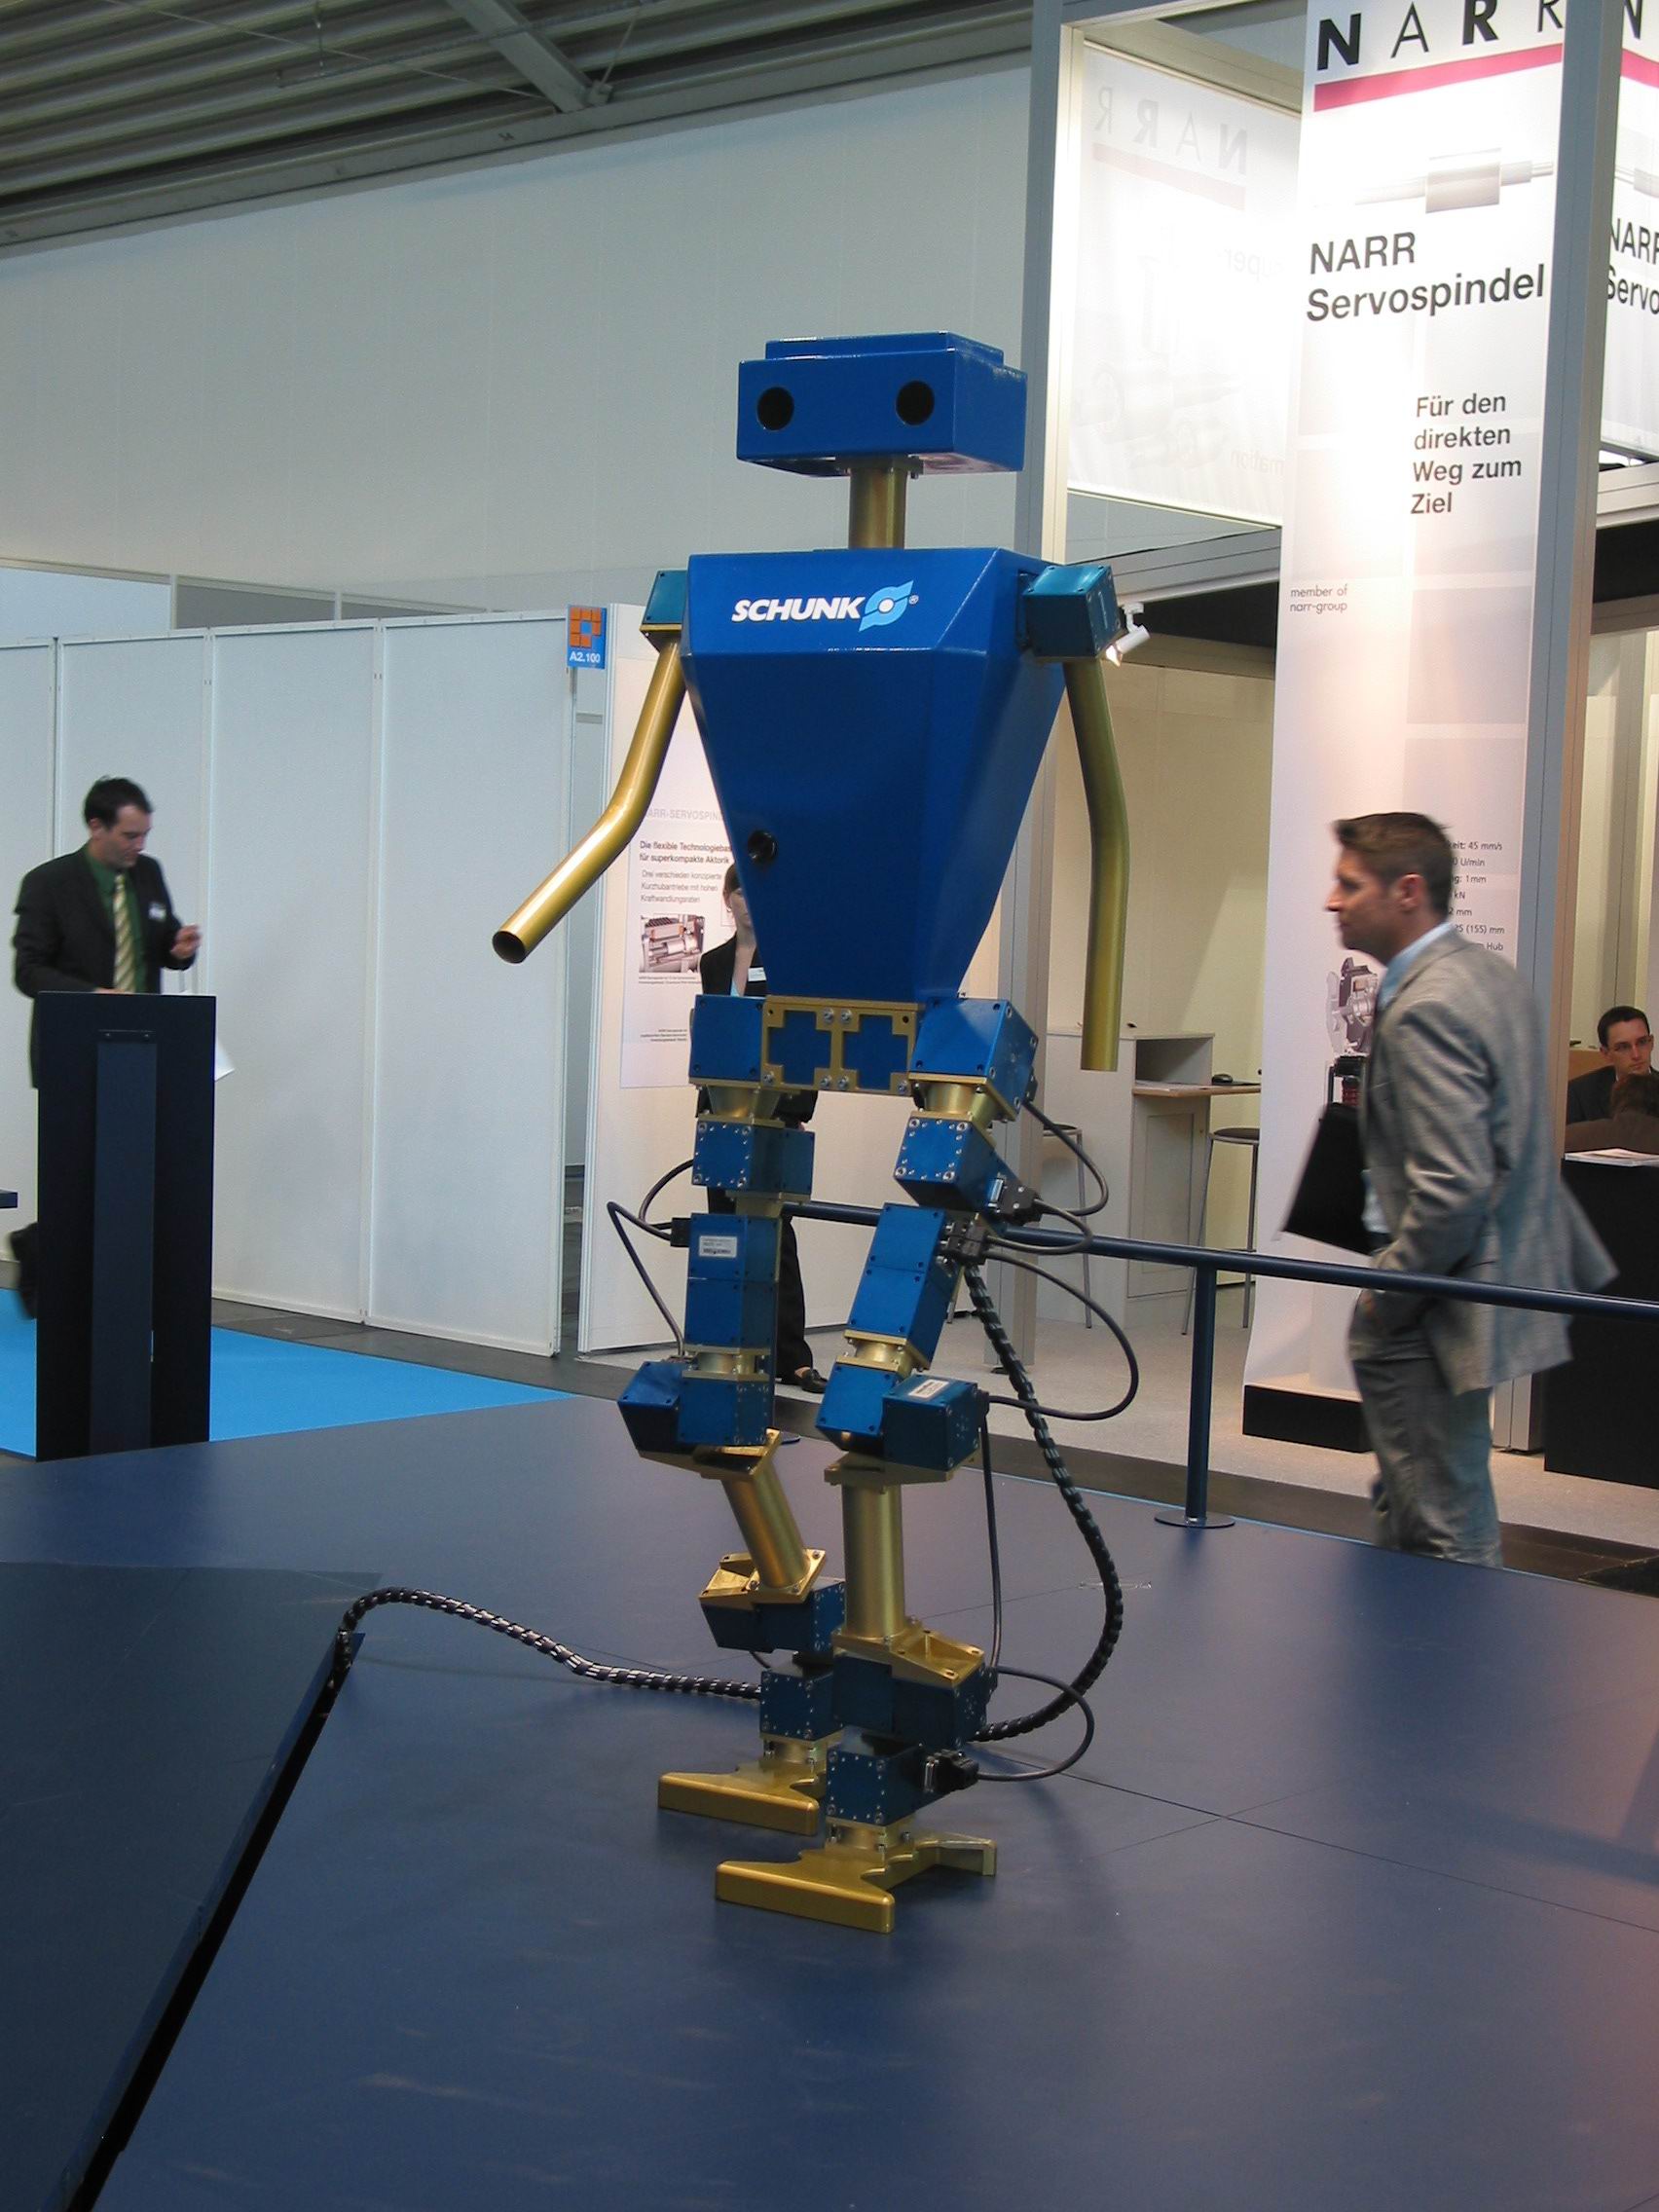 JKU Bipedal Robot - Picture: /uploads/images/robots/robotpictures-all/JKUBipedalRobot_001.jpg